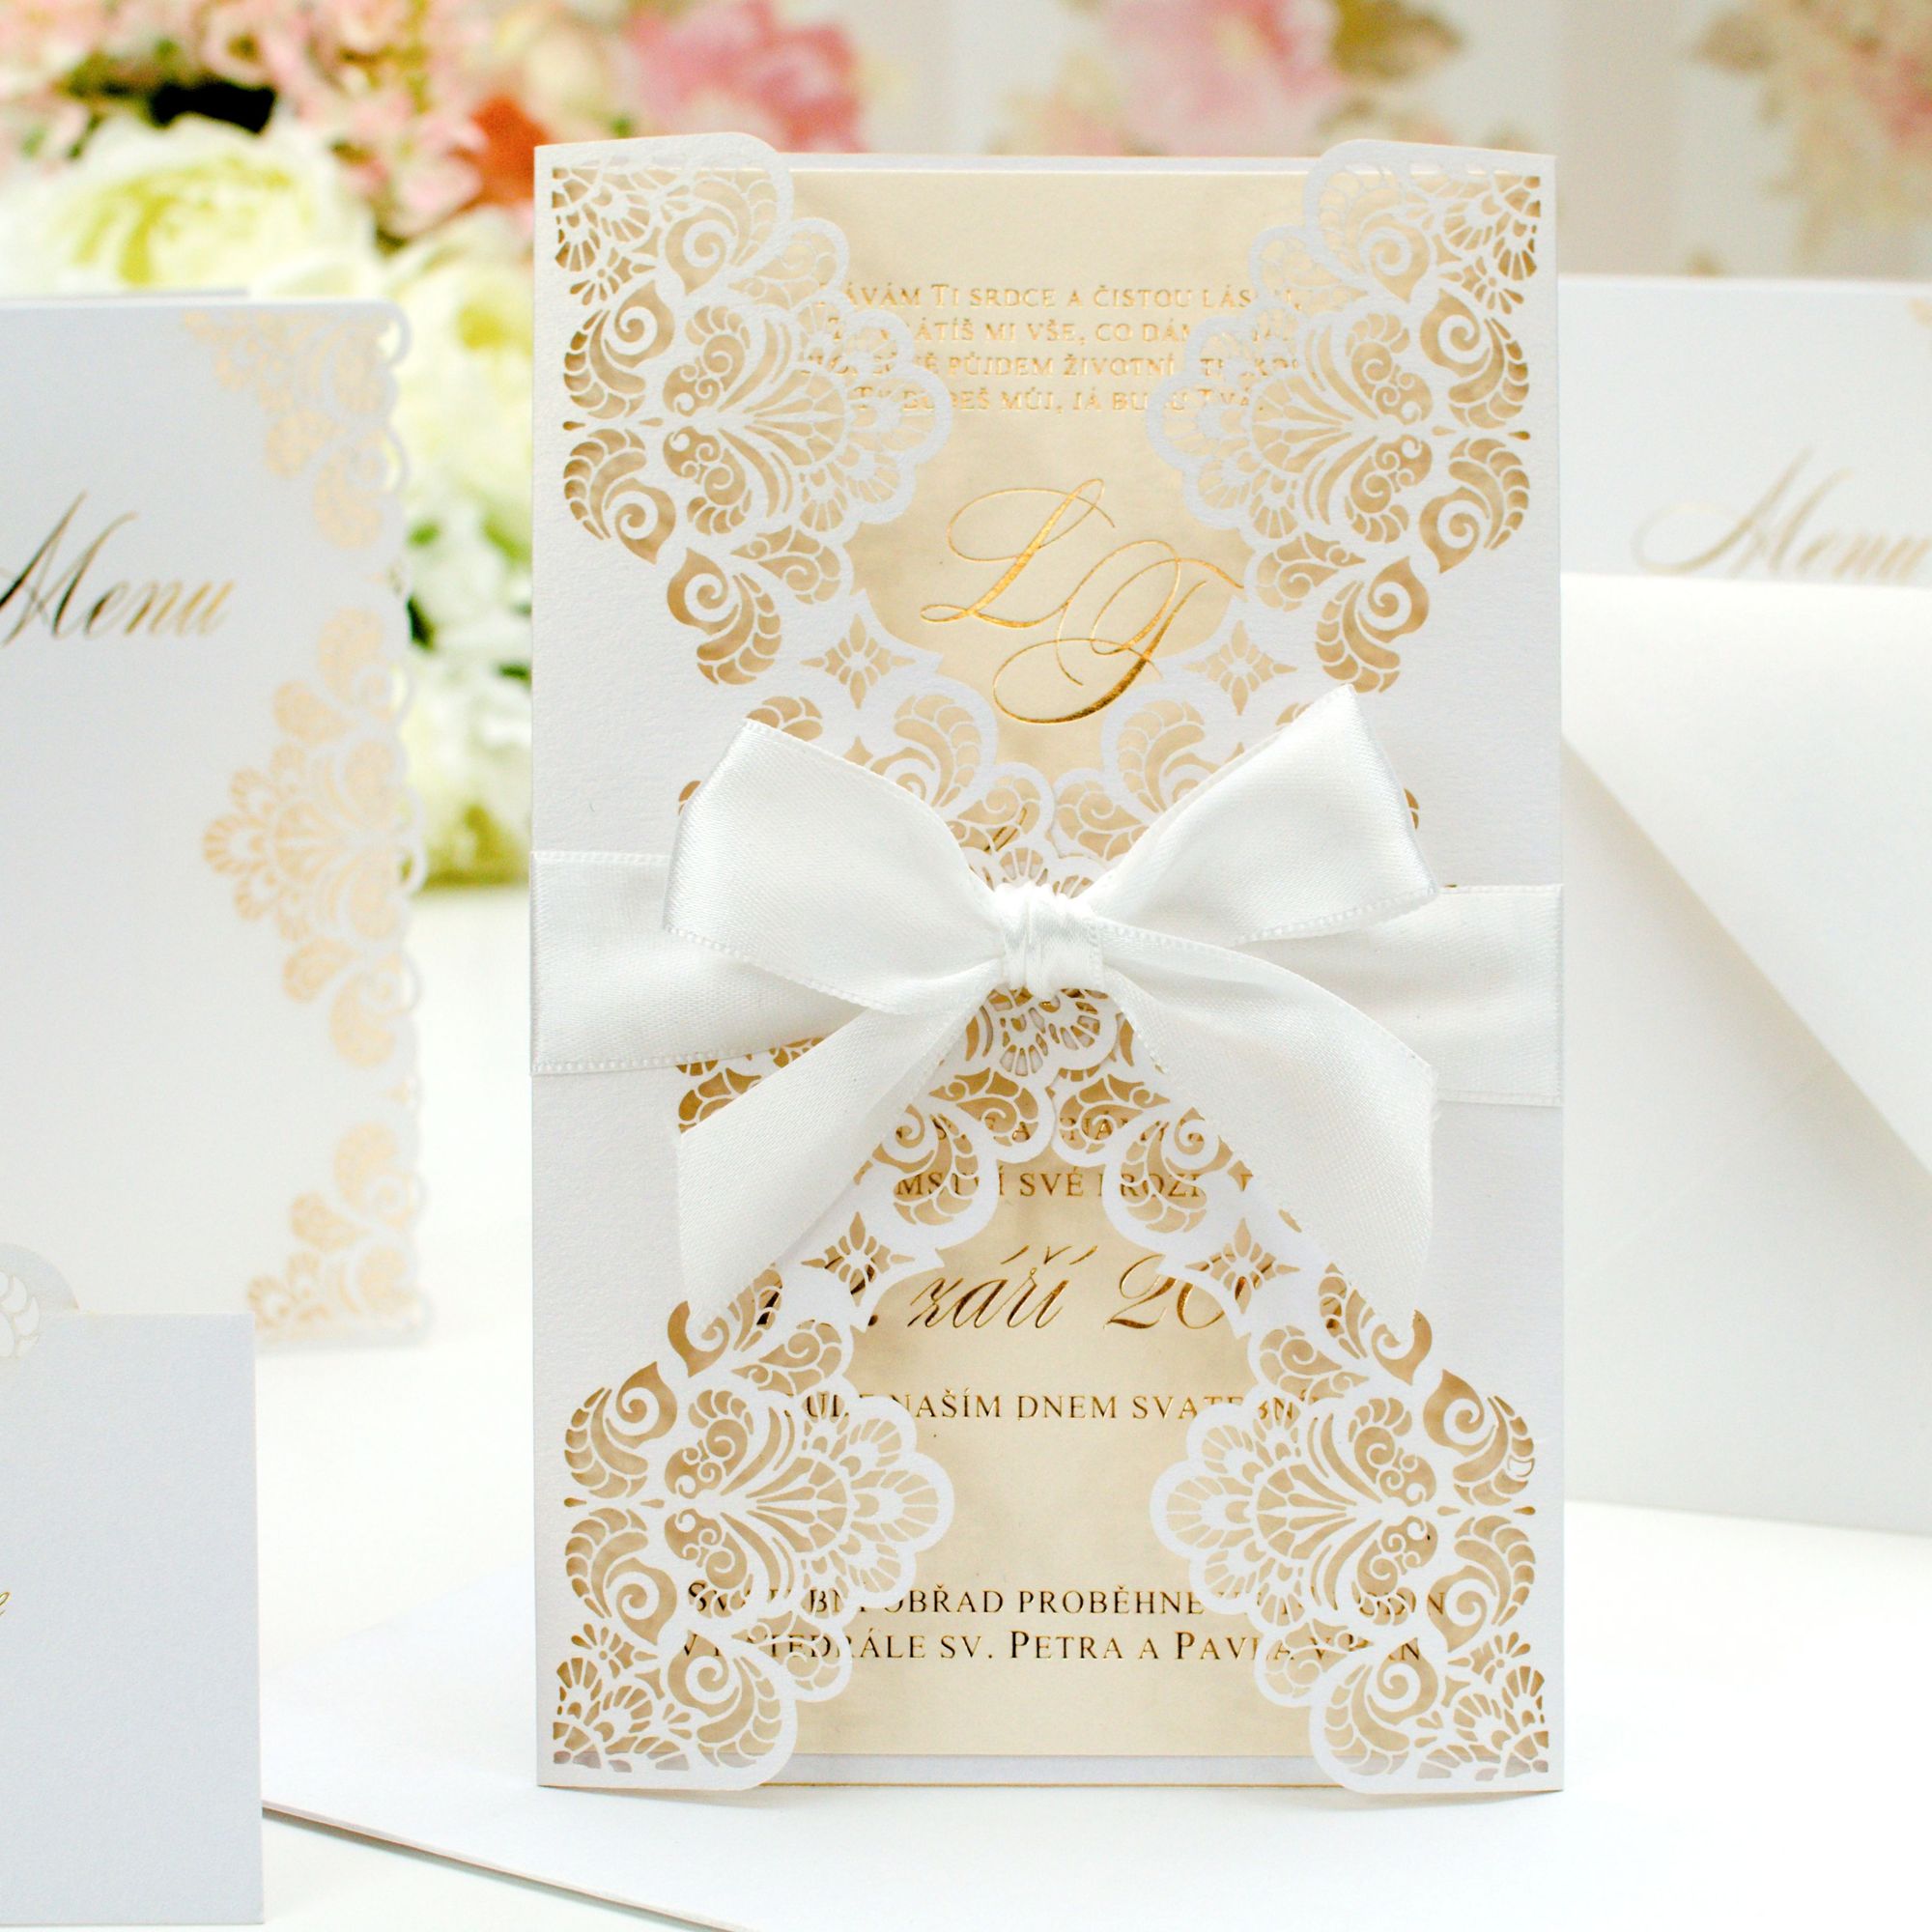 Svatební oznámení – dvoudílné – kapsa s laserovaným motivem krajky + vnitřní díl s digitálním tiskem.